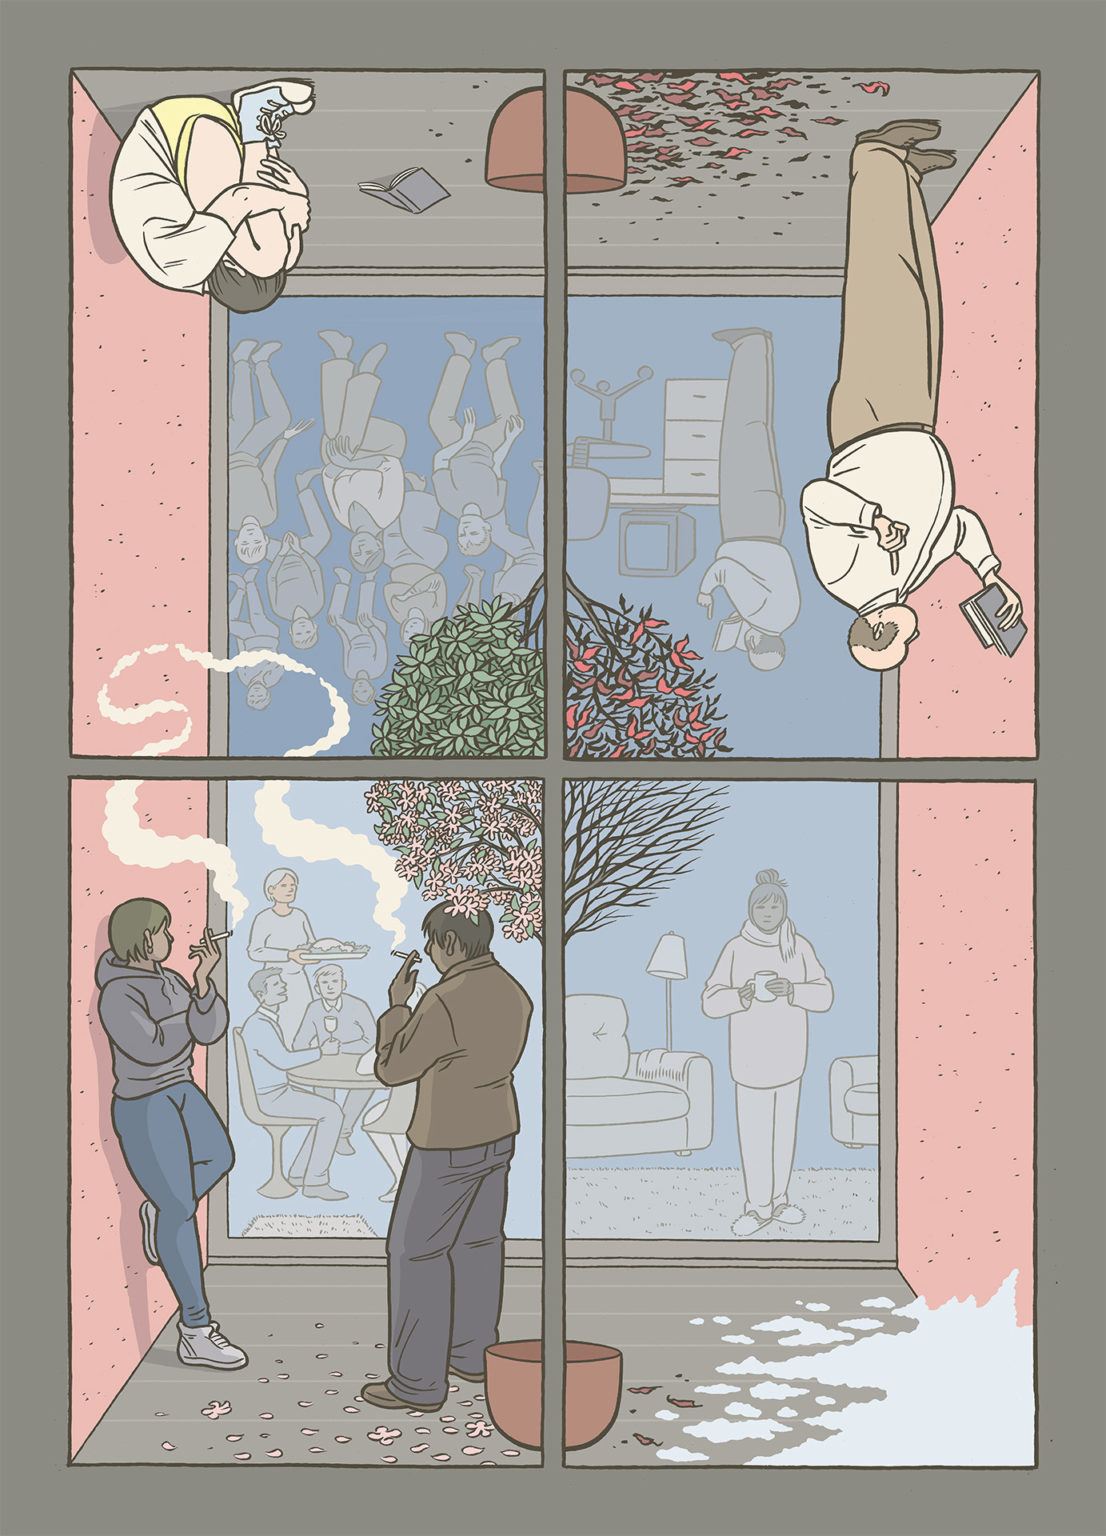 Illustration de Rebecca Rosen divisée en 4 parties (comme les 4 carreaux d"une fenêtre et les 4 saisons). Plusieurs personnages occupent ces espaces (derrière ou devant la vitre), des personnes isolées ou en groupe, qui fument, lisent, boivent un thé, se replient sur elles-mêmes.